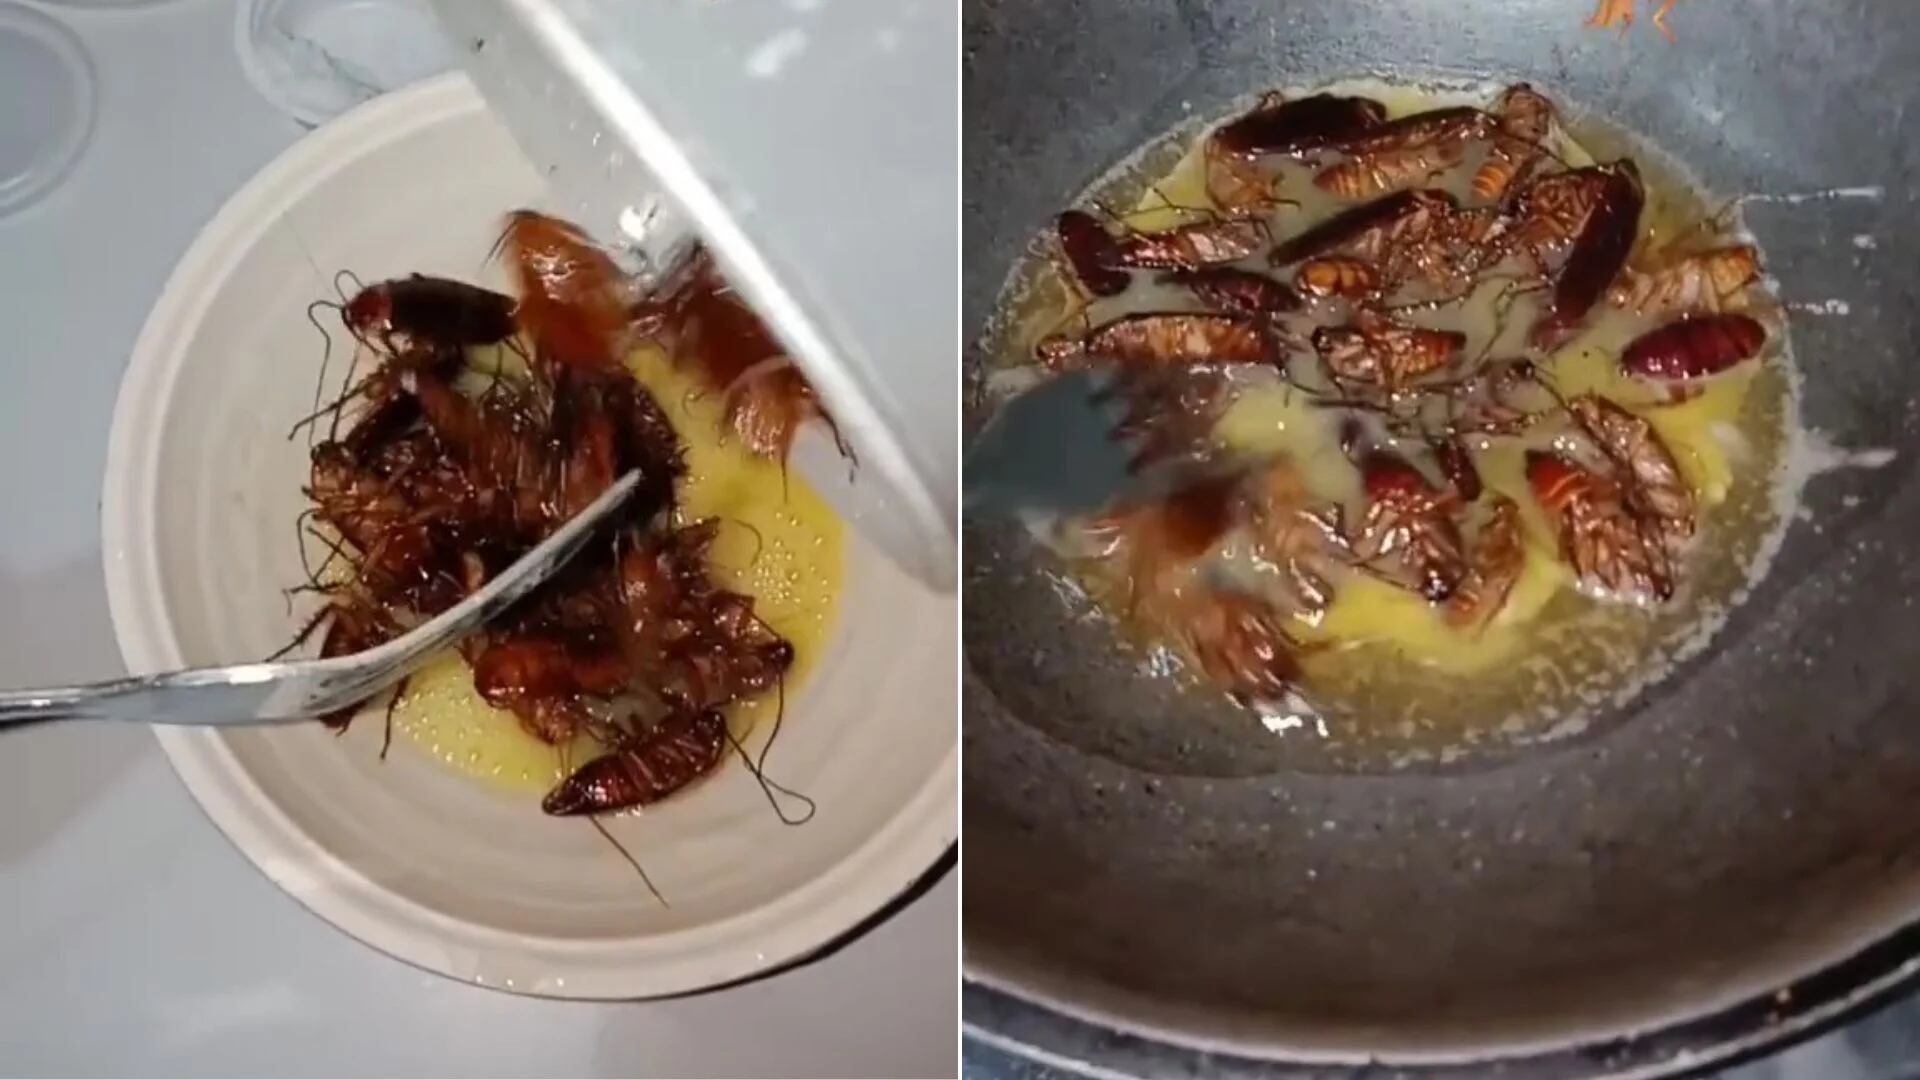 Una mujer causó repulsión al preparar huevos revueltos con cucarachas y catalogó el plato como “comida exótica”